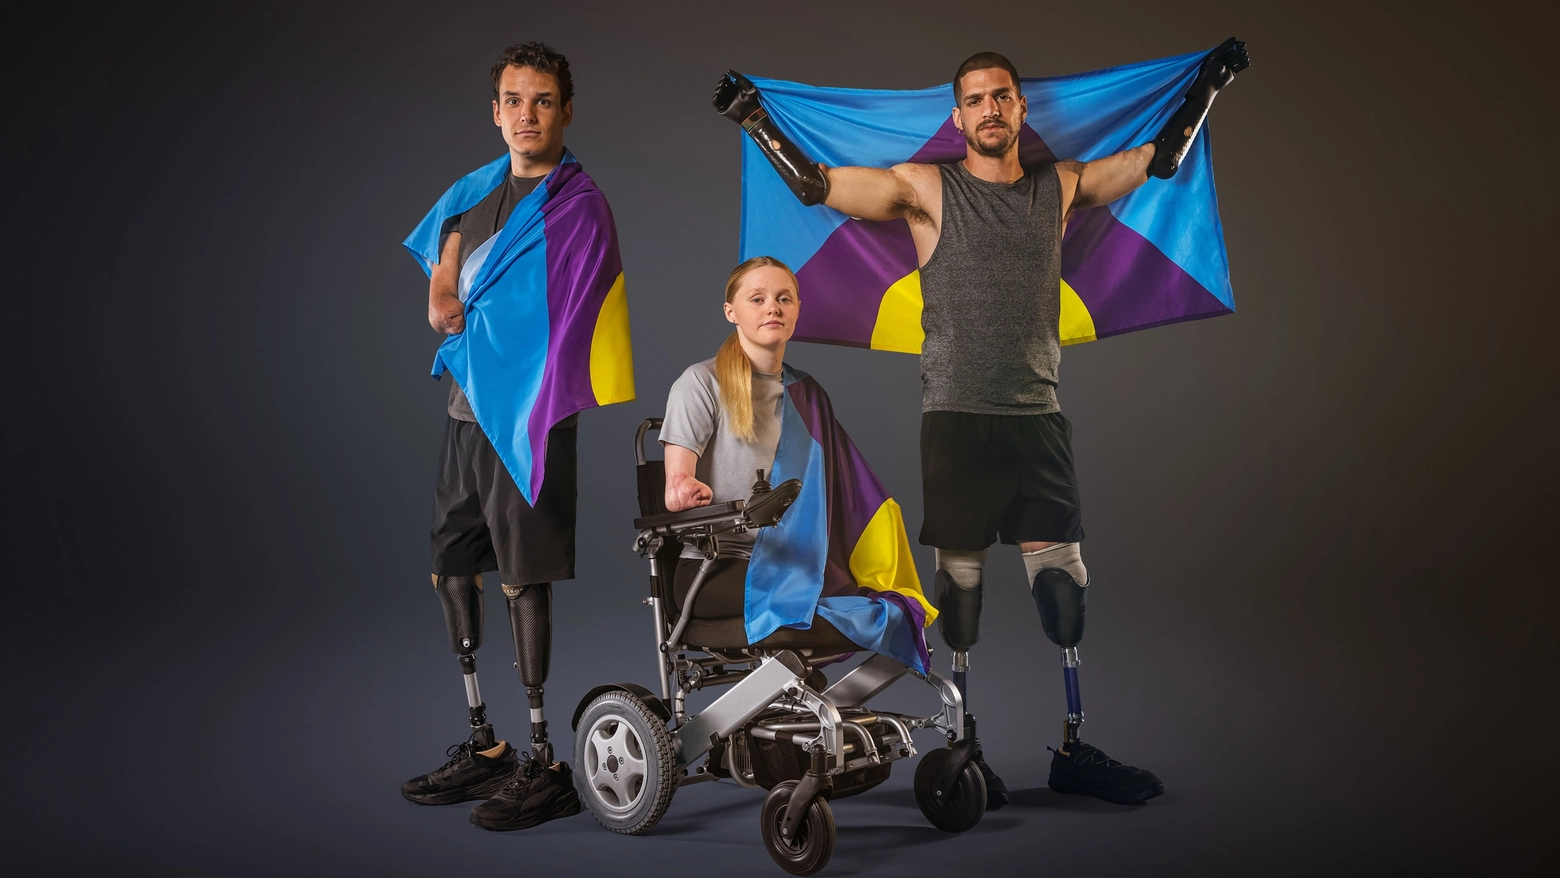 L’iniziativa svelata in occasione della giornata mondiale dedicata all’impegno a sconfiggere la patologia. Testimonial sono tre atleti paralimpici, fra i quali l’italiano Davide Morana